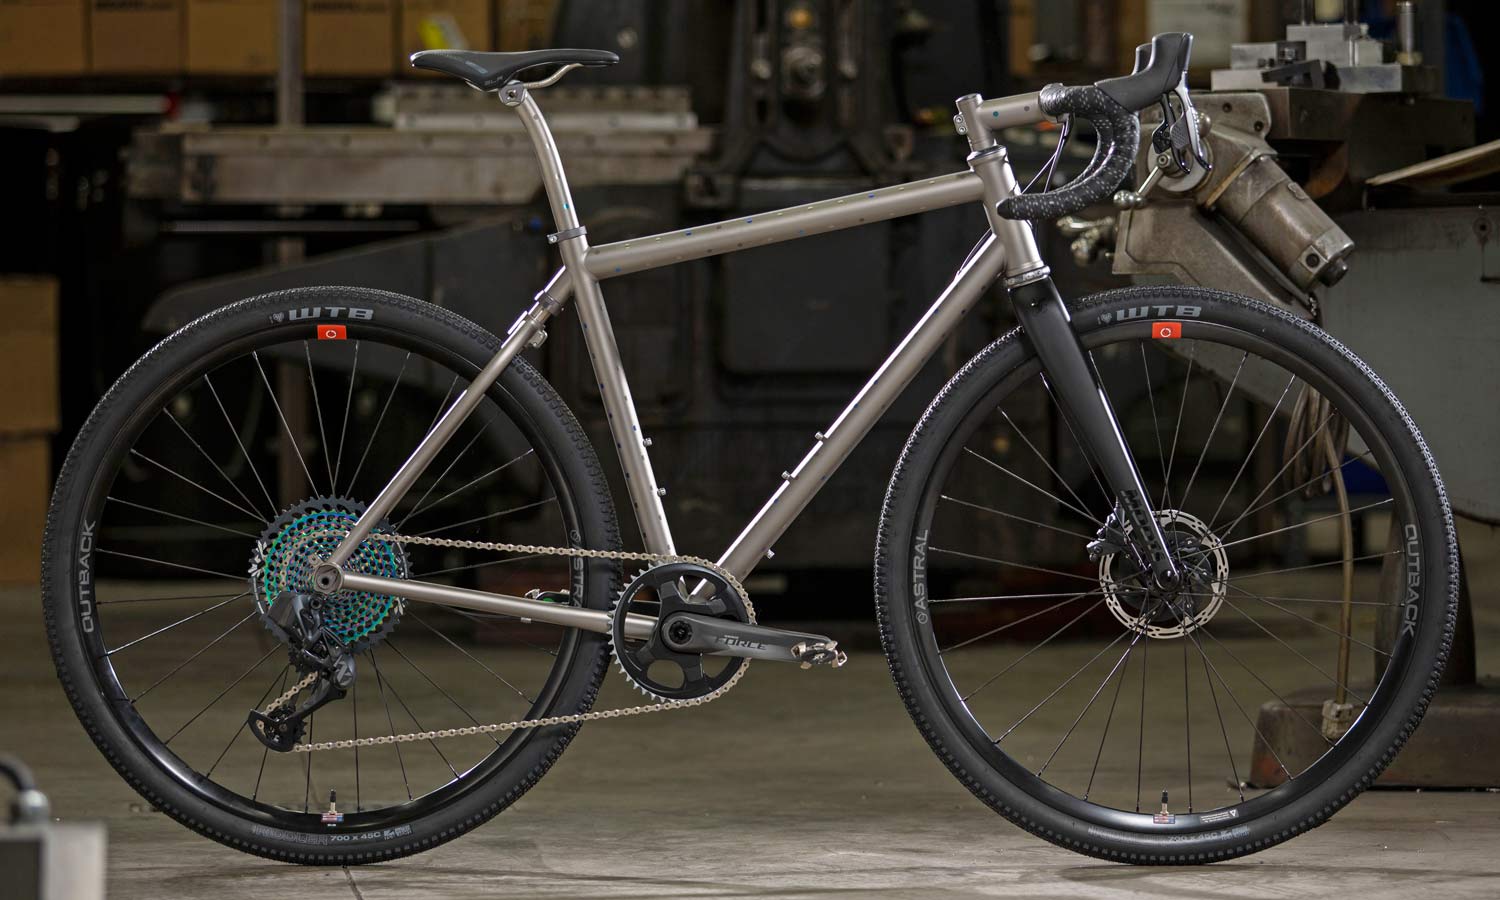 2021 Moots Routt titanium gravel bike family updates, new Routt 45 50 RSL YBB ti gravel